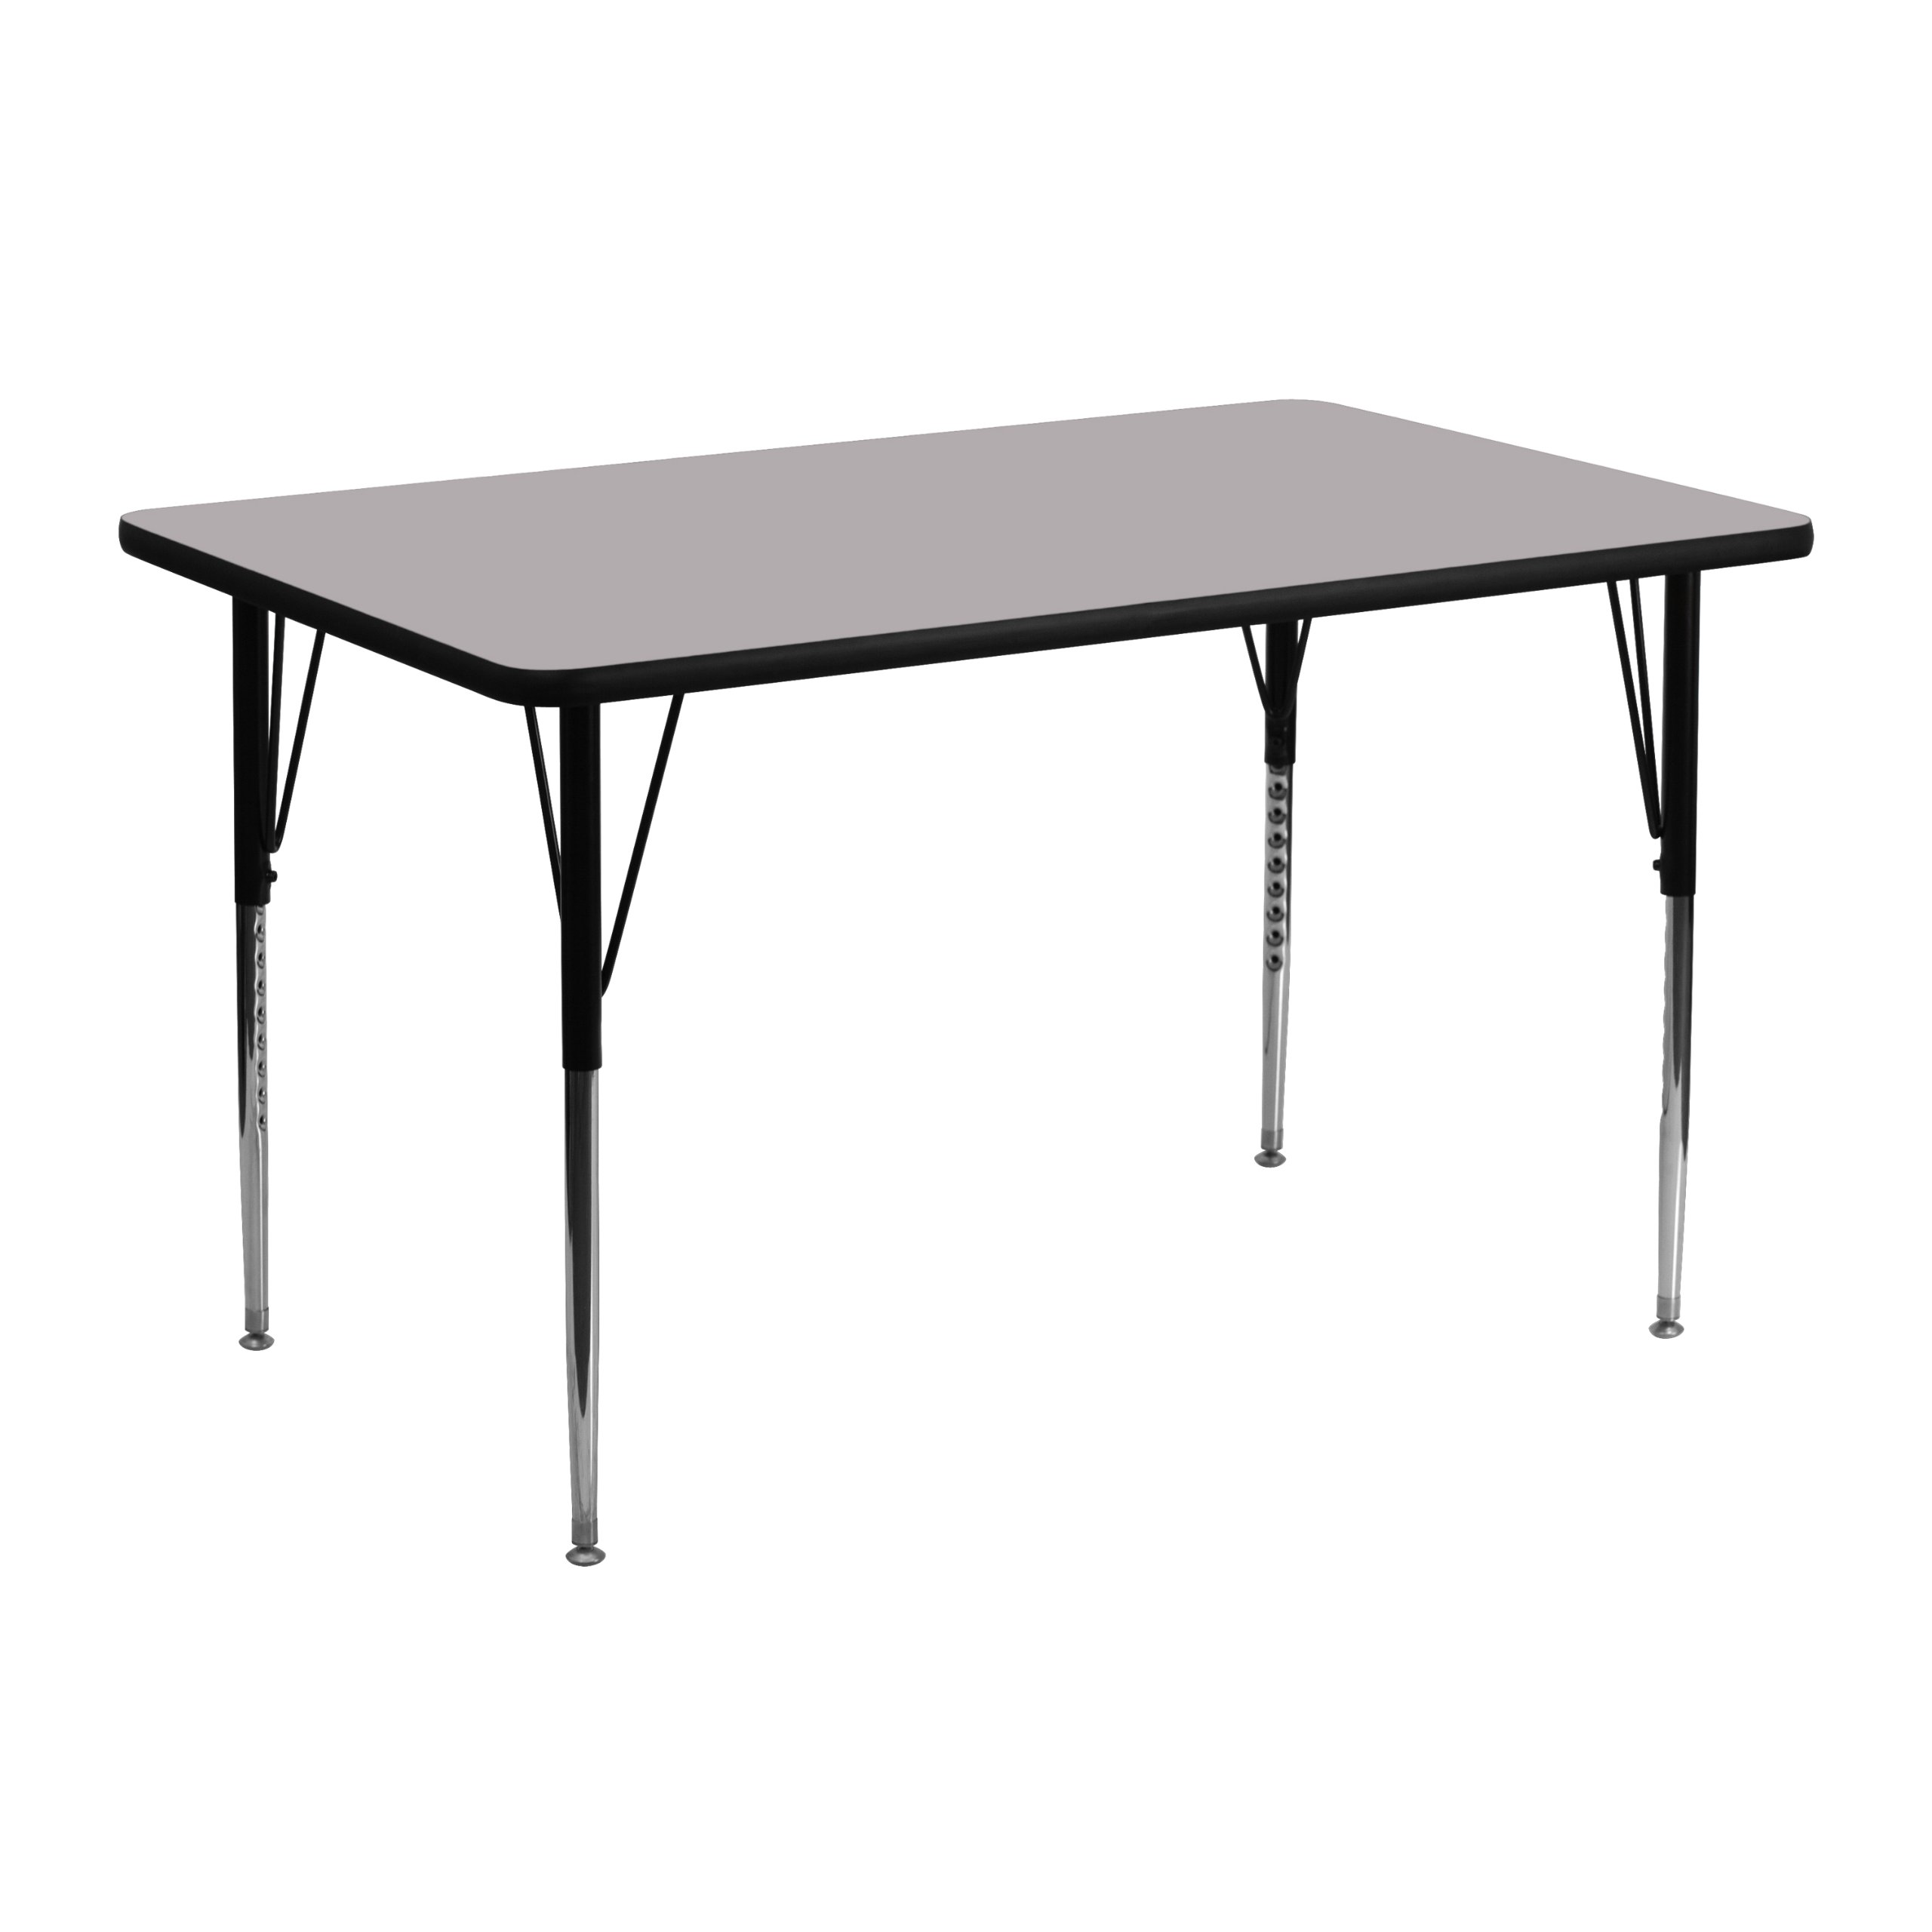  Flash Furniture 24 Прямоугольный стол для занятий с серой столешницей из термоплавкого ламината/стандартными регул...